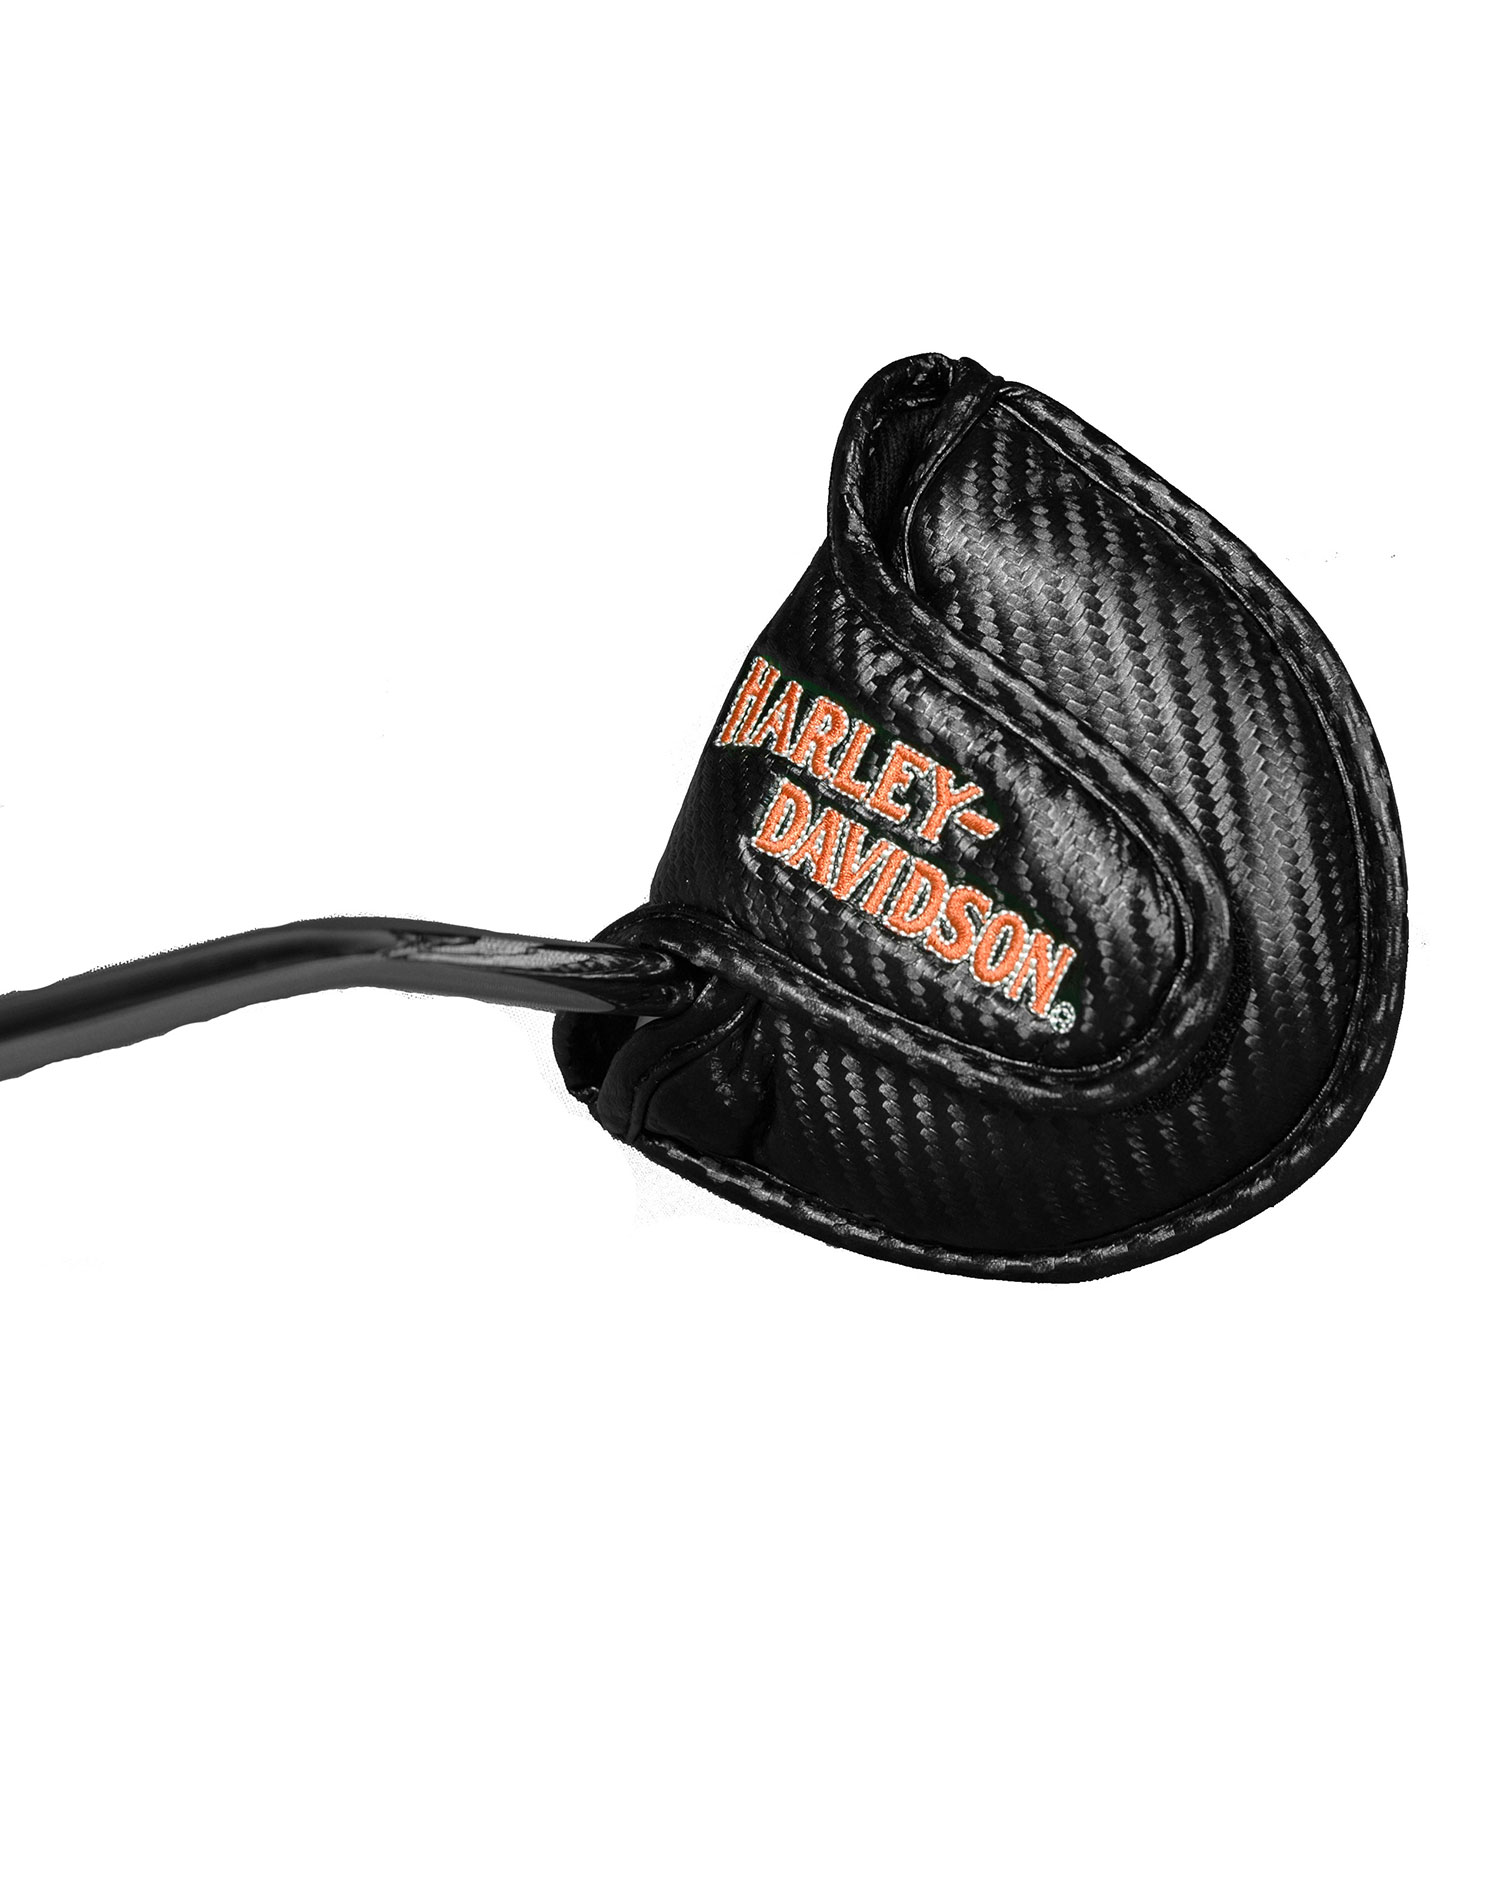 Harley Davidson Mallet Putter Cover J M Golf Inc